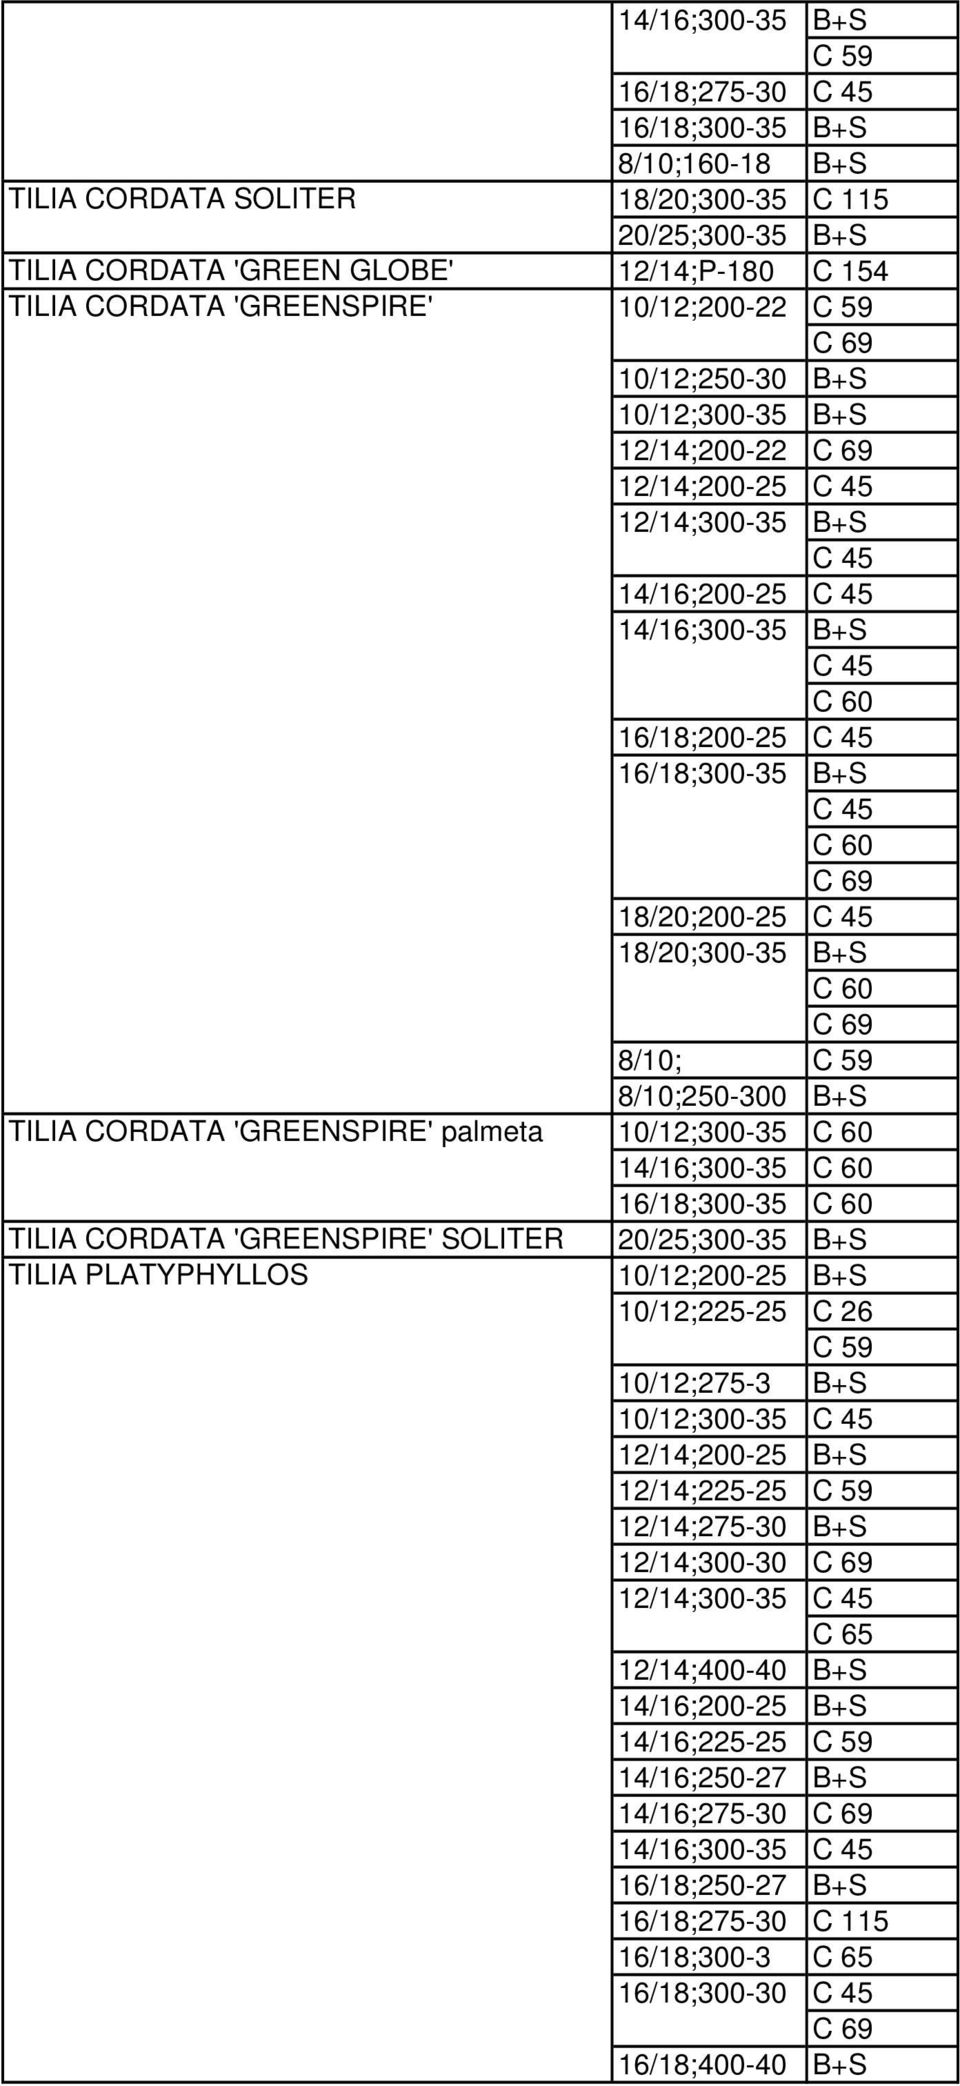 59 8/10;250-300 B+S TILIA CORDATA 'GREENSPIRE' palmeta 10/12;300-35 14/16;300-35 16/18;300-35 TILIA CORDATA 'GREENSPIRE' SOLITER 20/25;300-35 B+S TILIA PLATYPHYLLOS 10/12;200-25 B+S 10/12;225-25 C 59